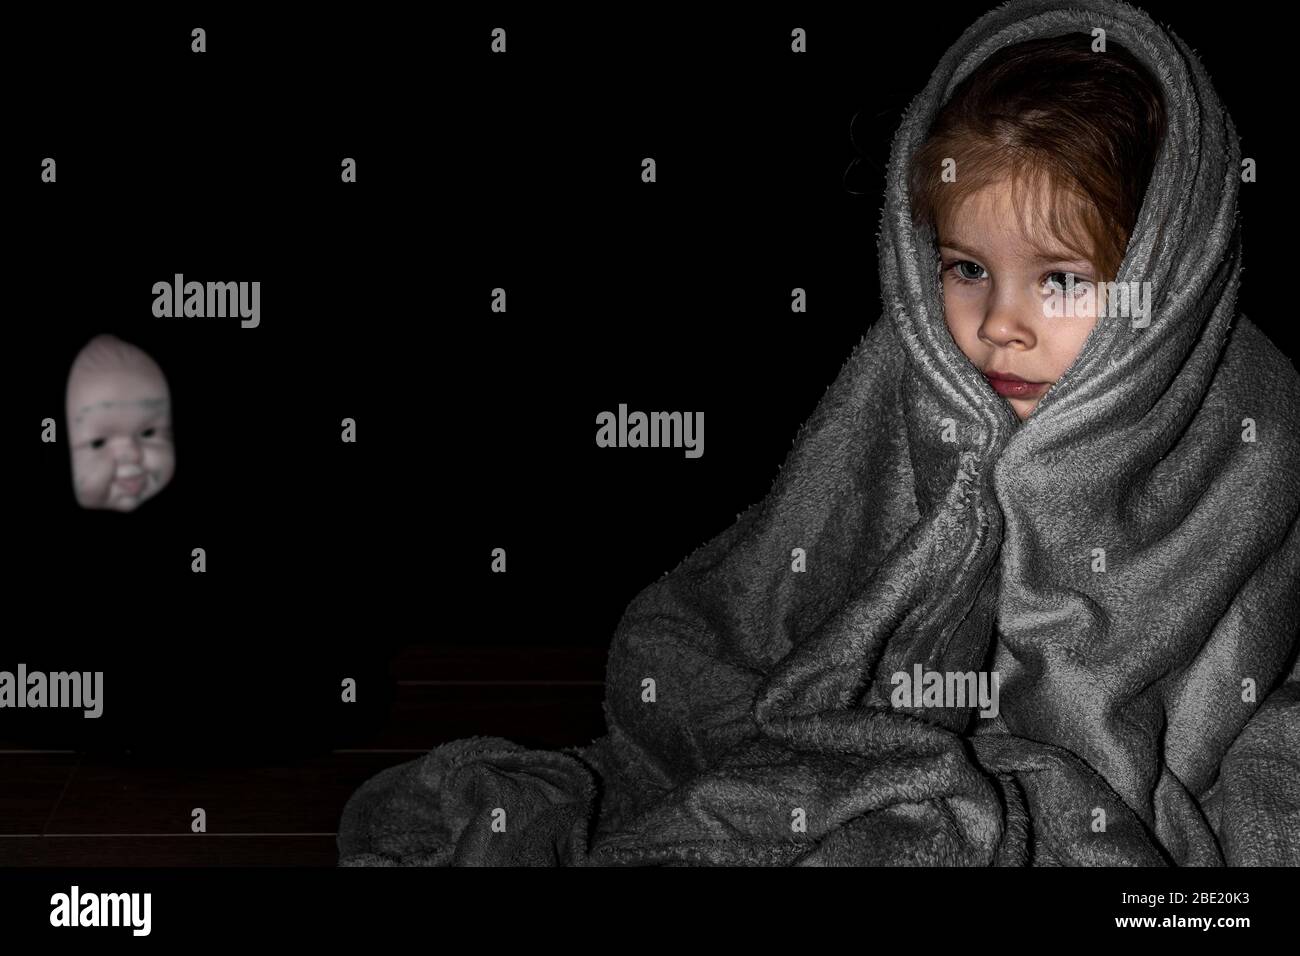 une petite fille assise dans le noir enveloppé dans une couverture, à l'arrière-plan le visage flou d'une poupée effrayante. la nuit des enfants craint Banque D'Images